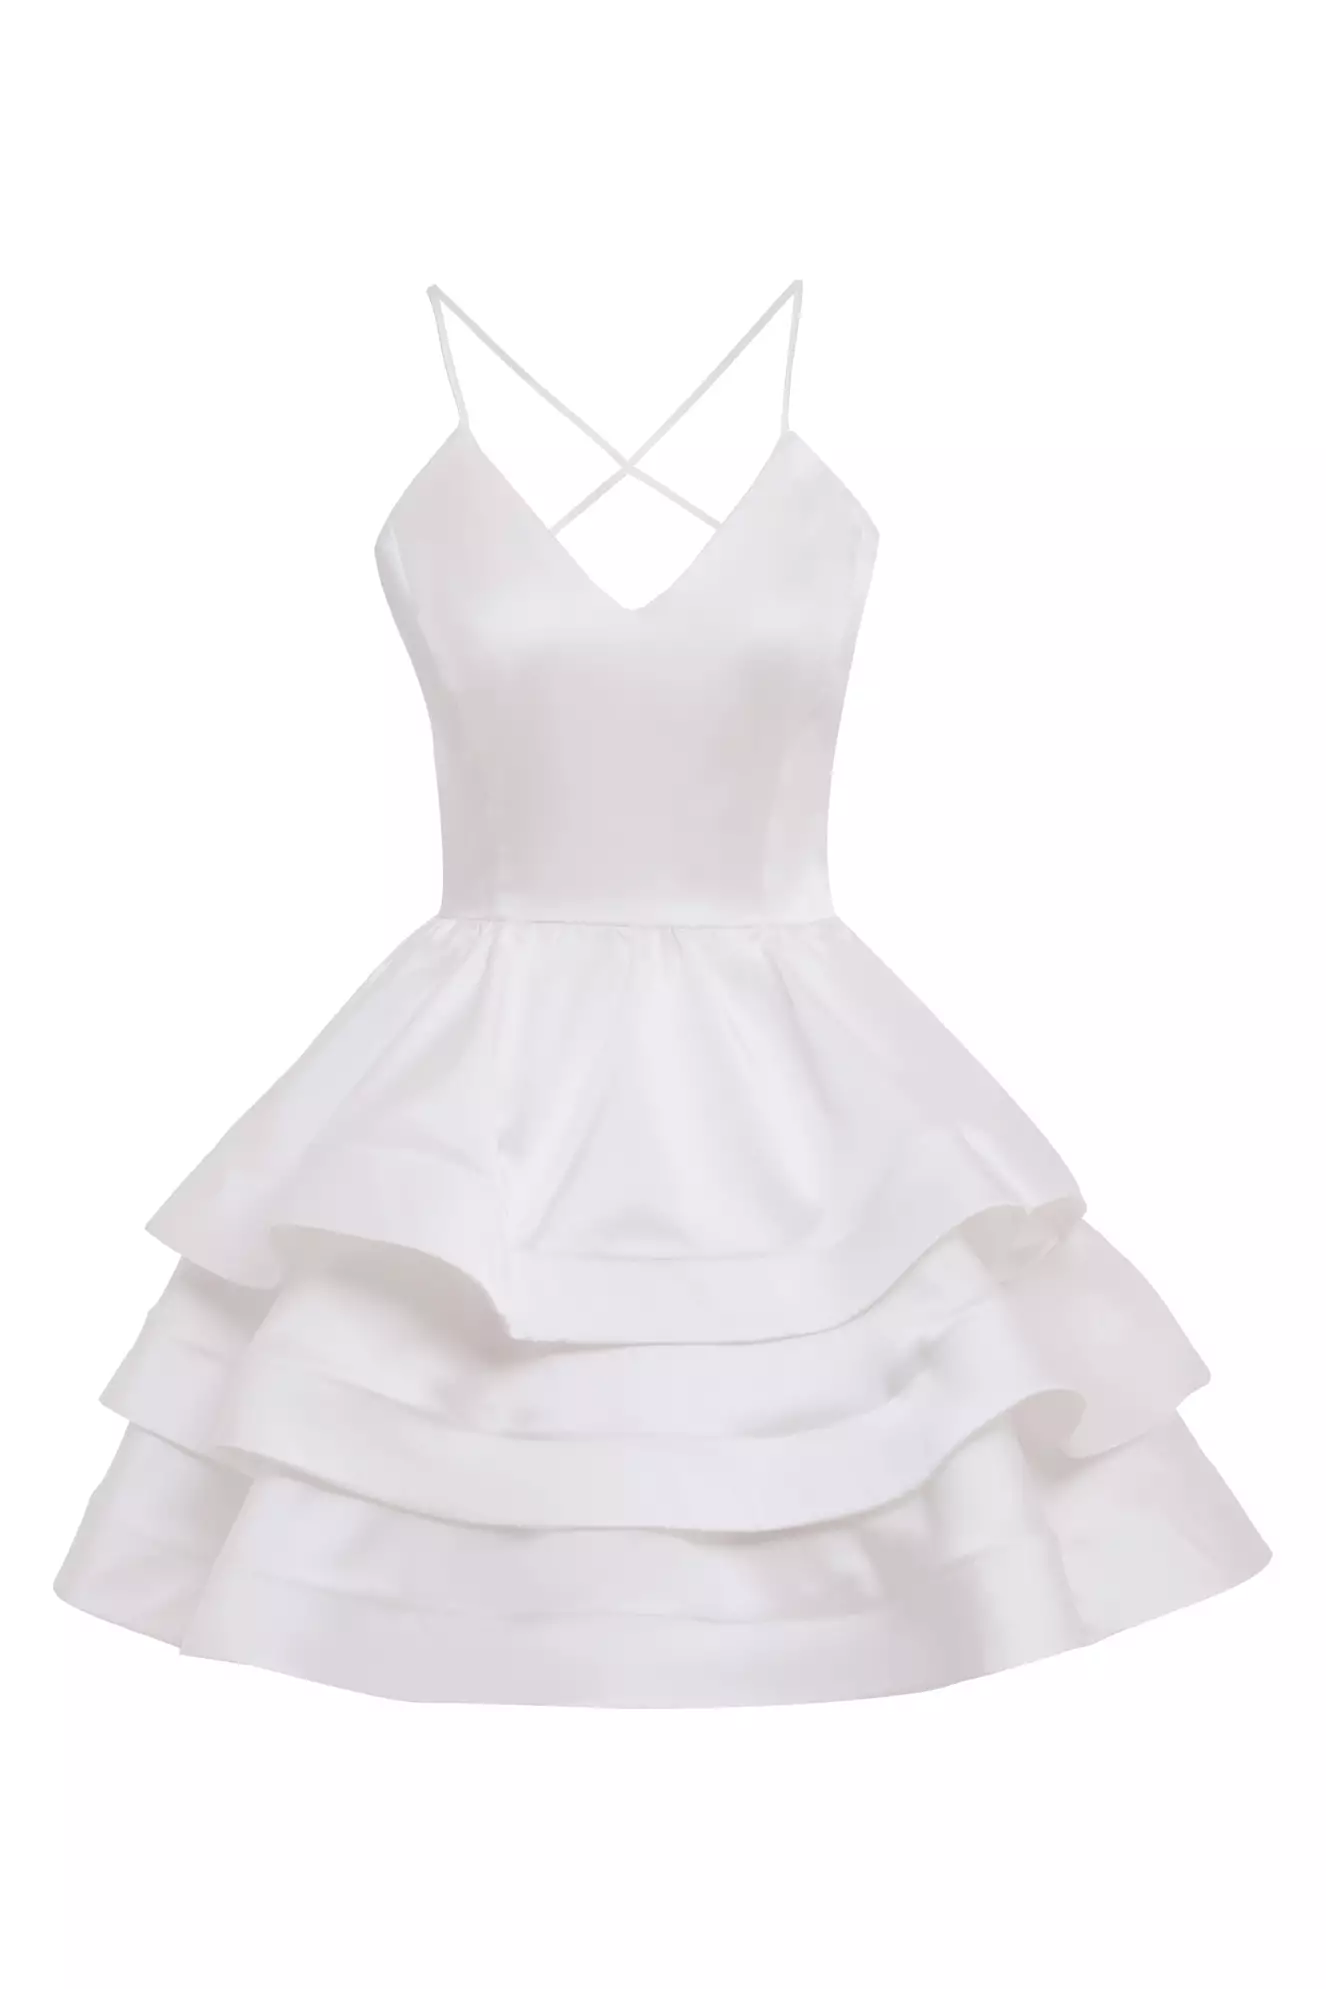 White satin sleeveless mini dress